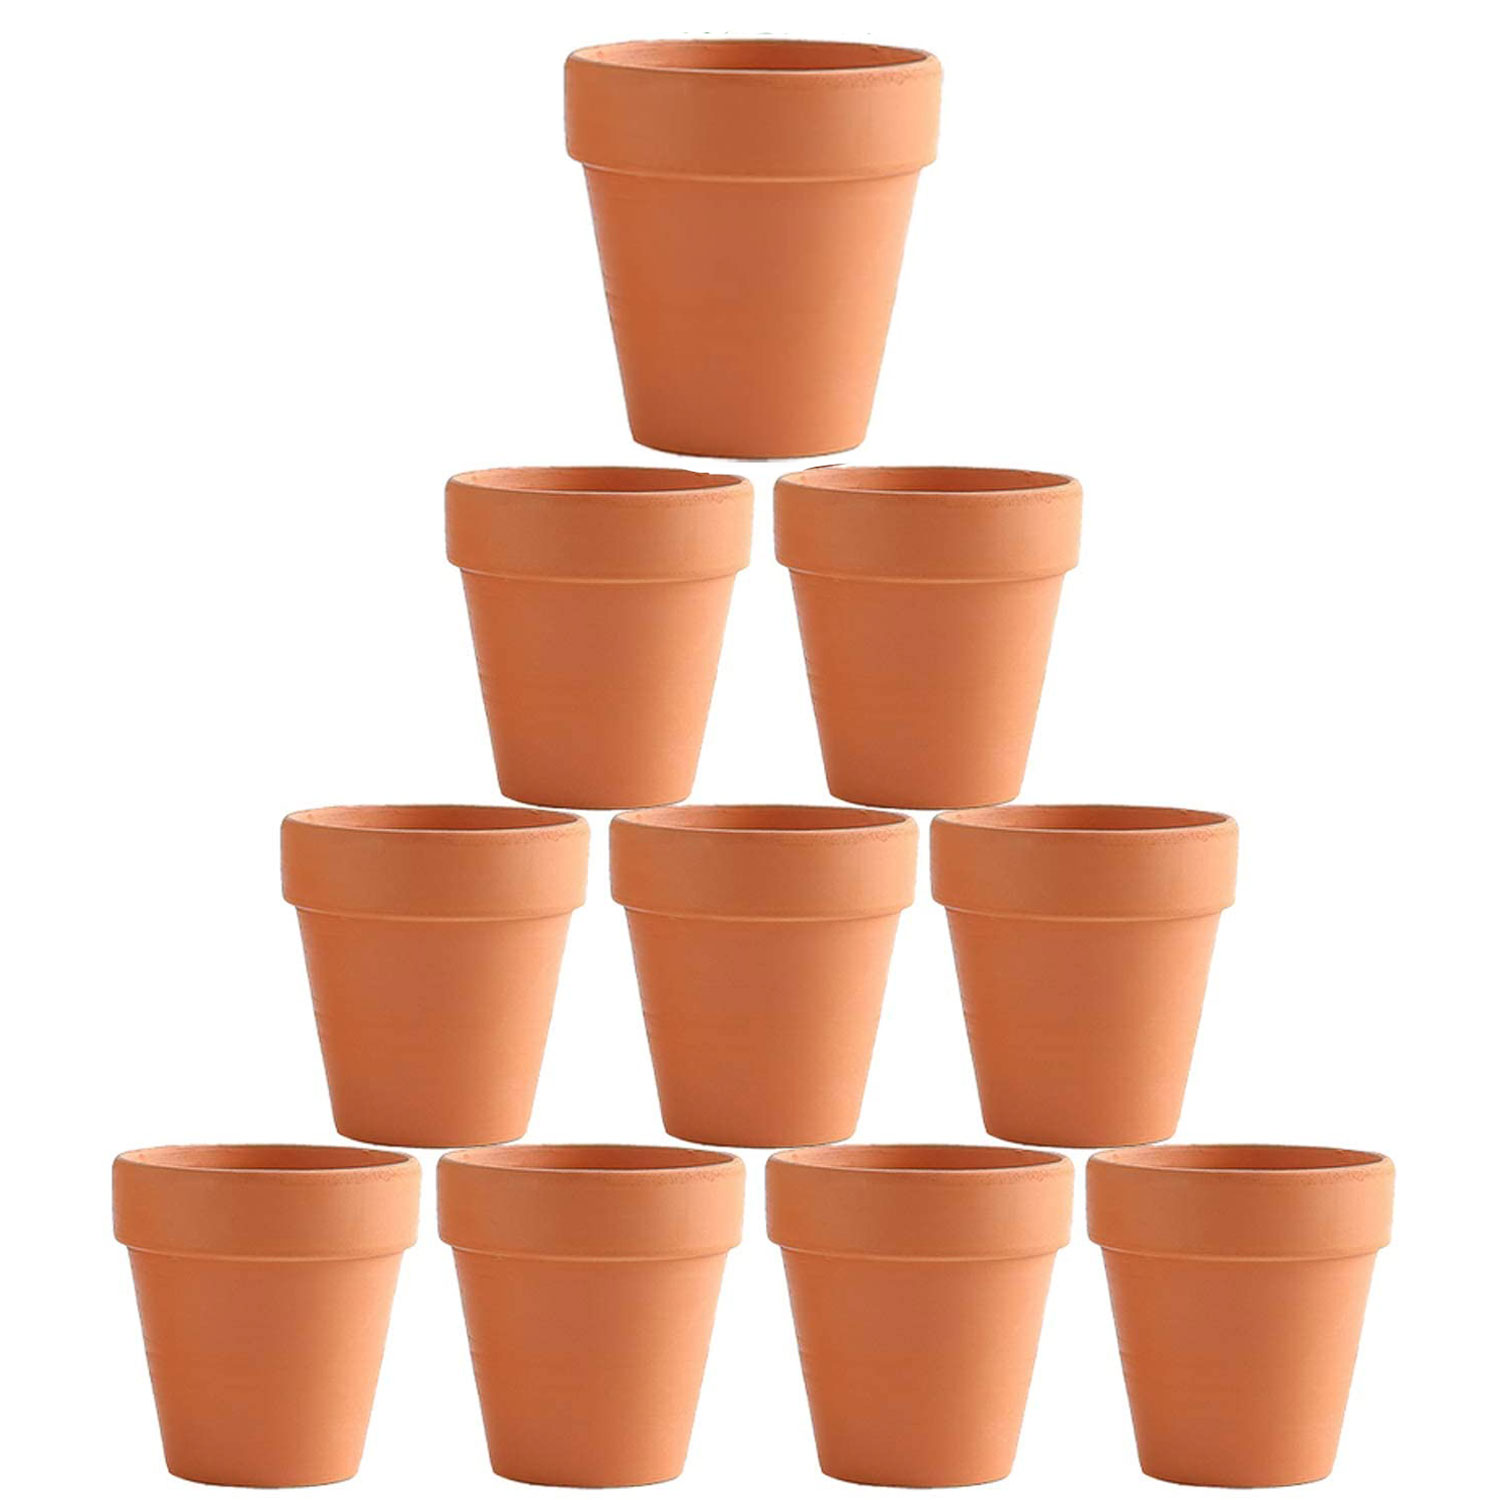 Flower Pot Pots Clay Ceramic Plant Drain Hole Succulent Cactus Nursery Planter – 10×6 cm